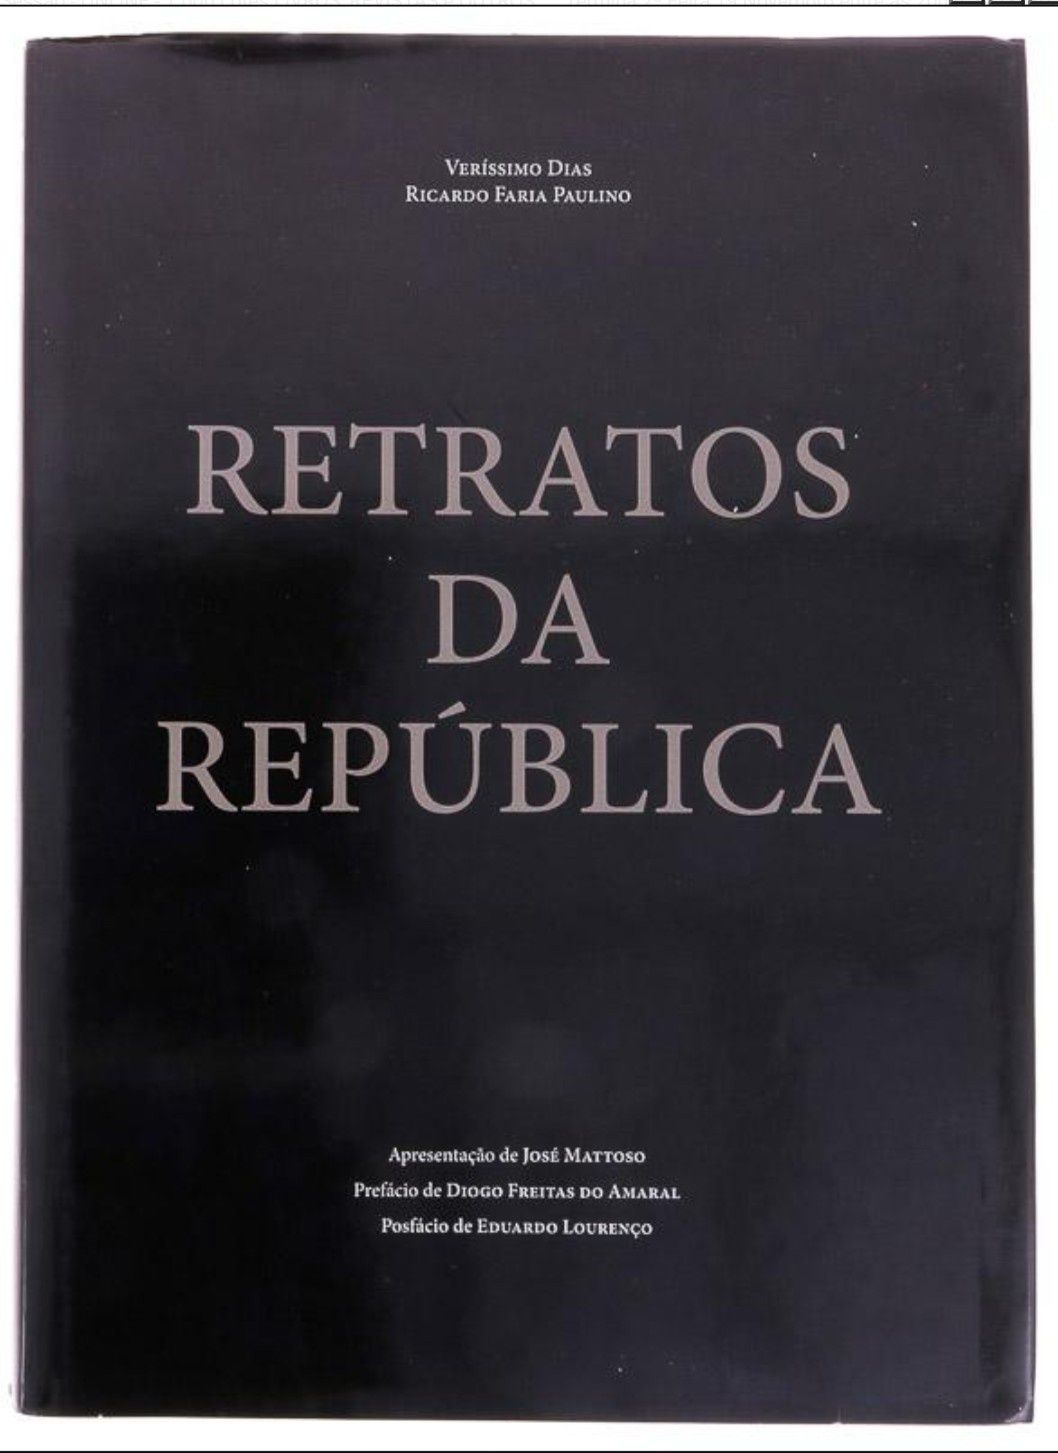 Livro "Retratos da República" - Veríssimo Dias / Ricardo Faria Paulino